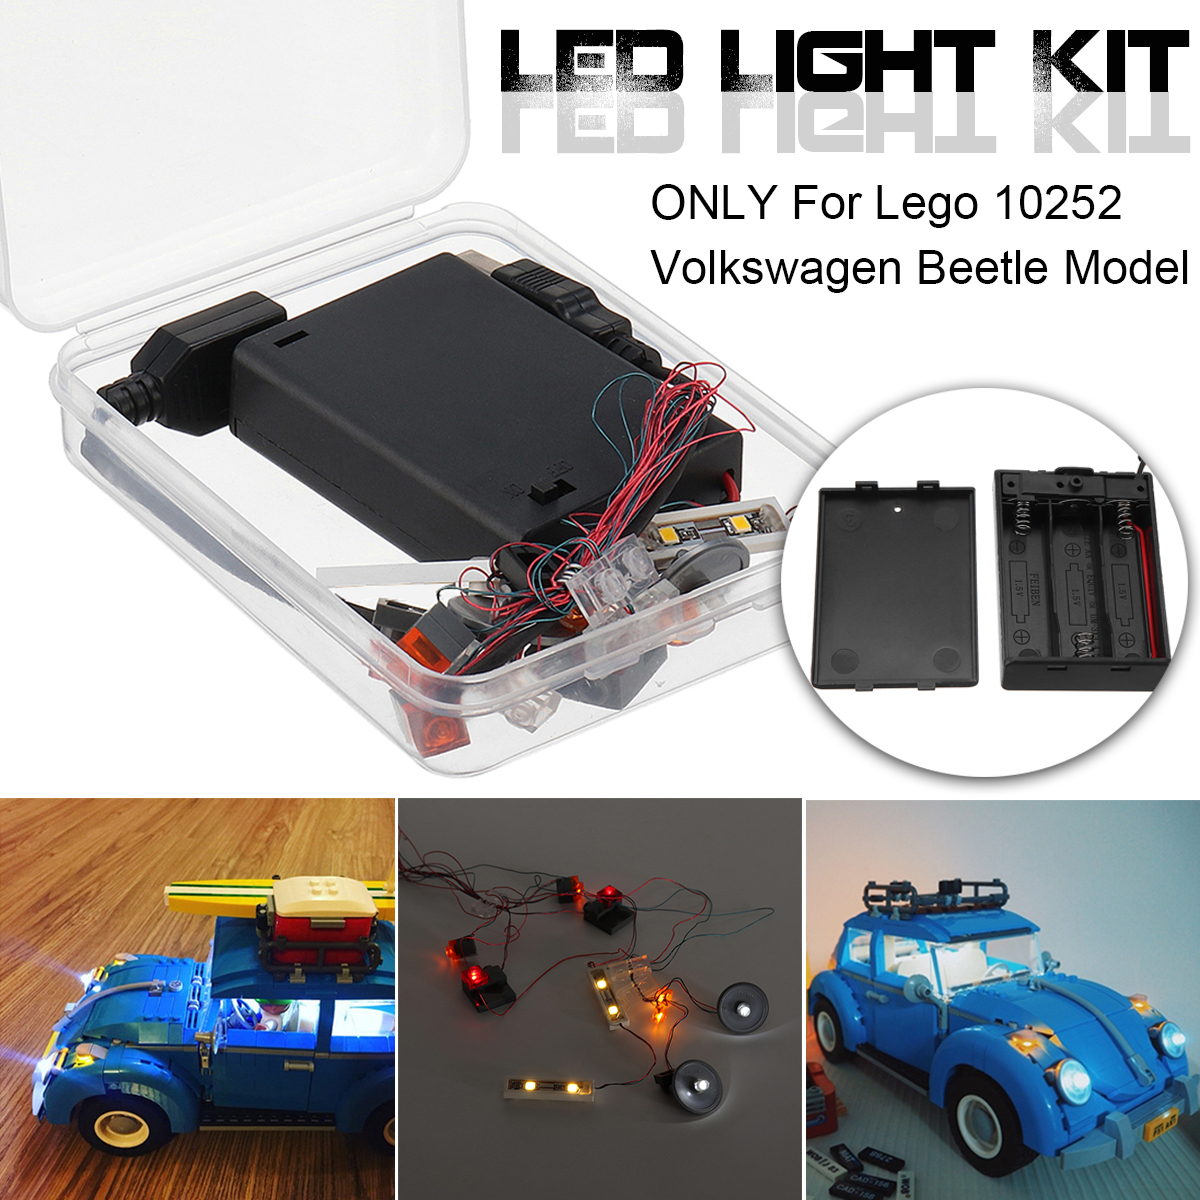 LED-Light-Lighting-Kit-DIY-ONLY-For-Lego-10252-Volk-swagen-Beetle-Model-Bricks-21003-1338710-1